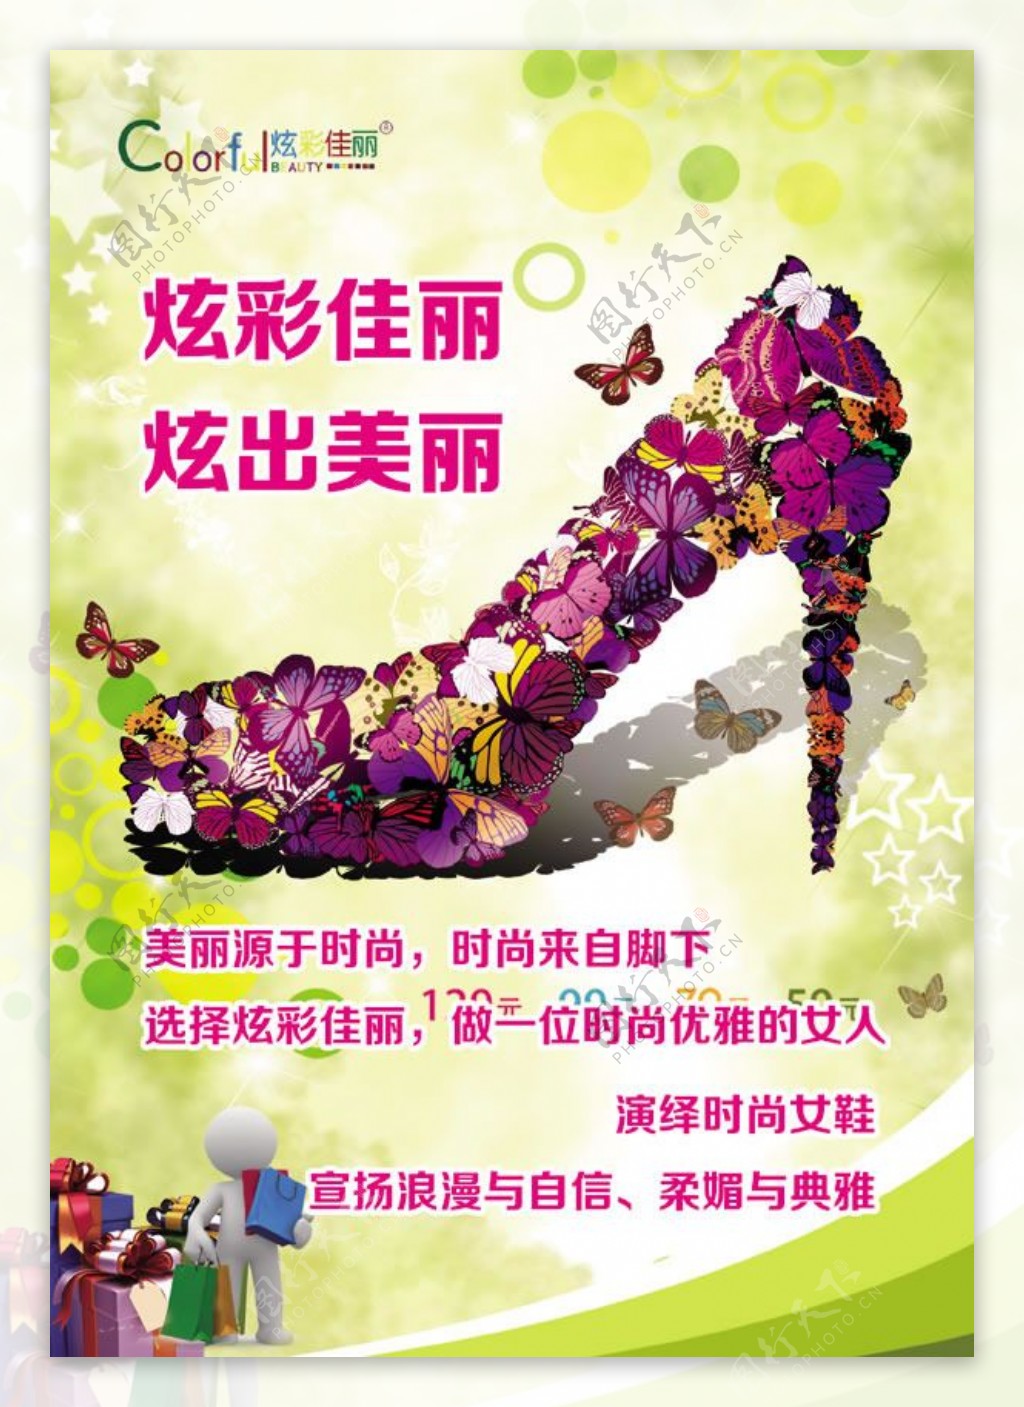 炫彩佳丽女鞋创意宣传海报psd设计素材